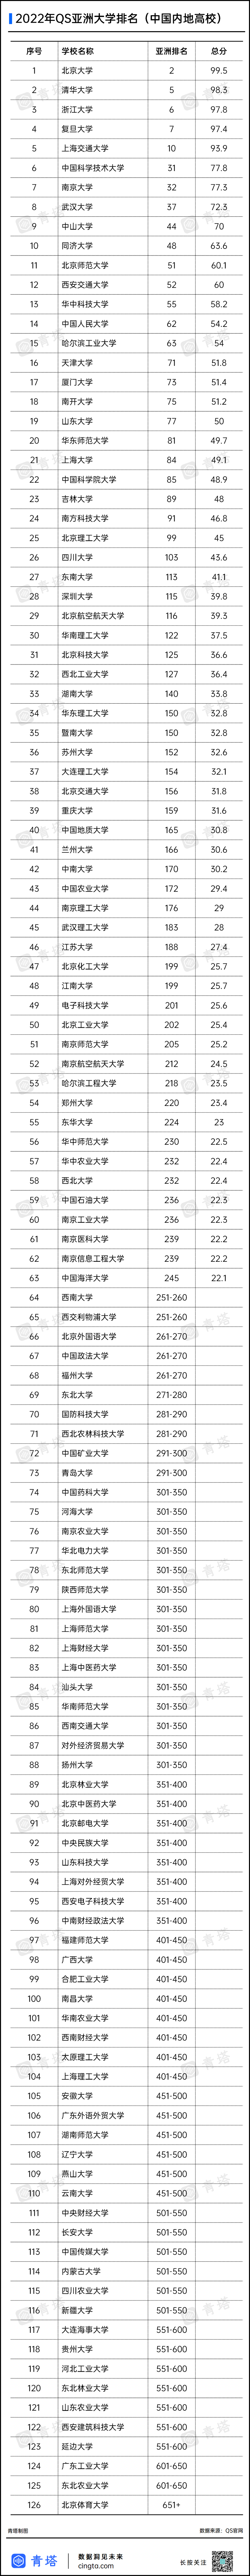 中国入围的183高校名单.png